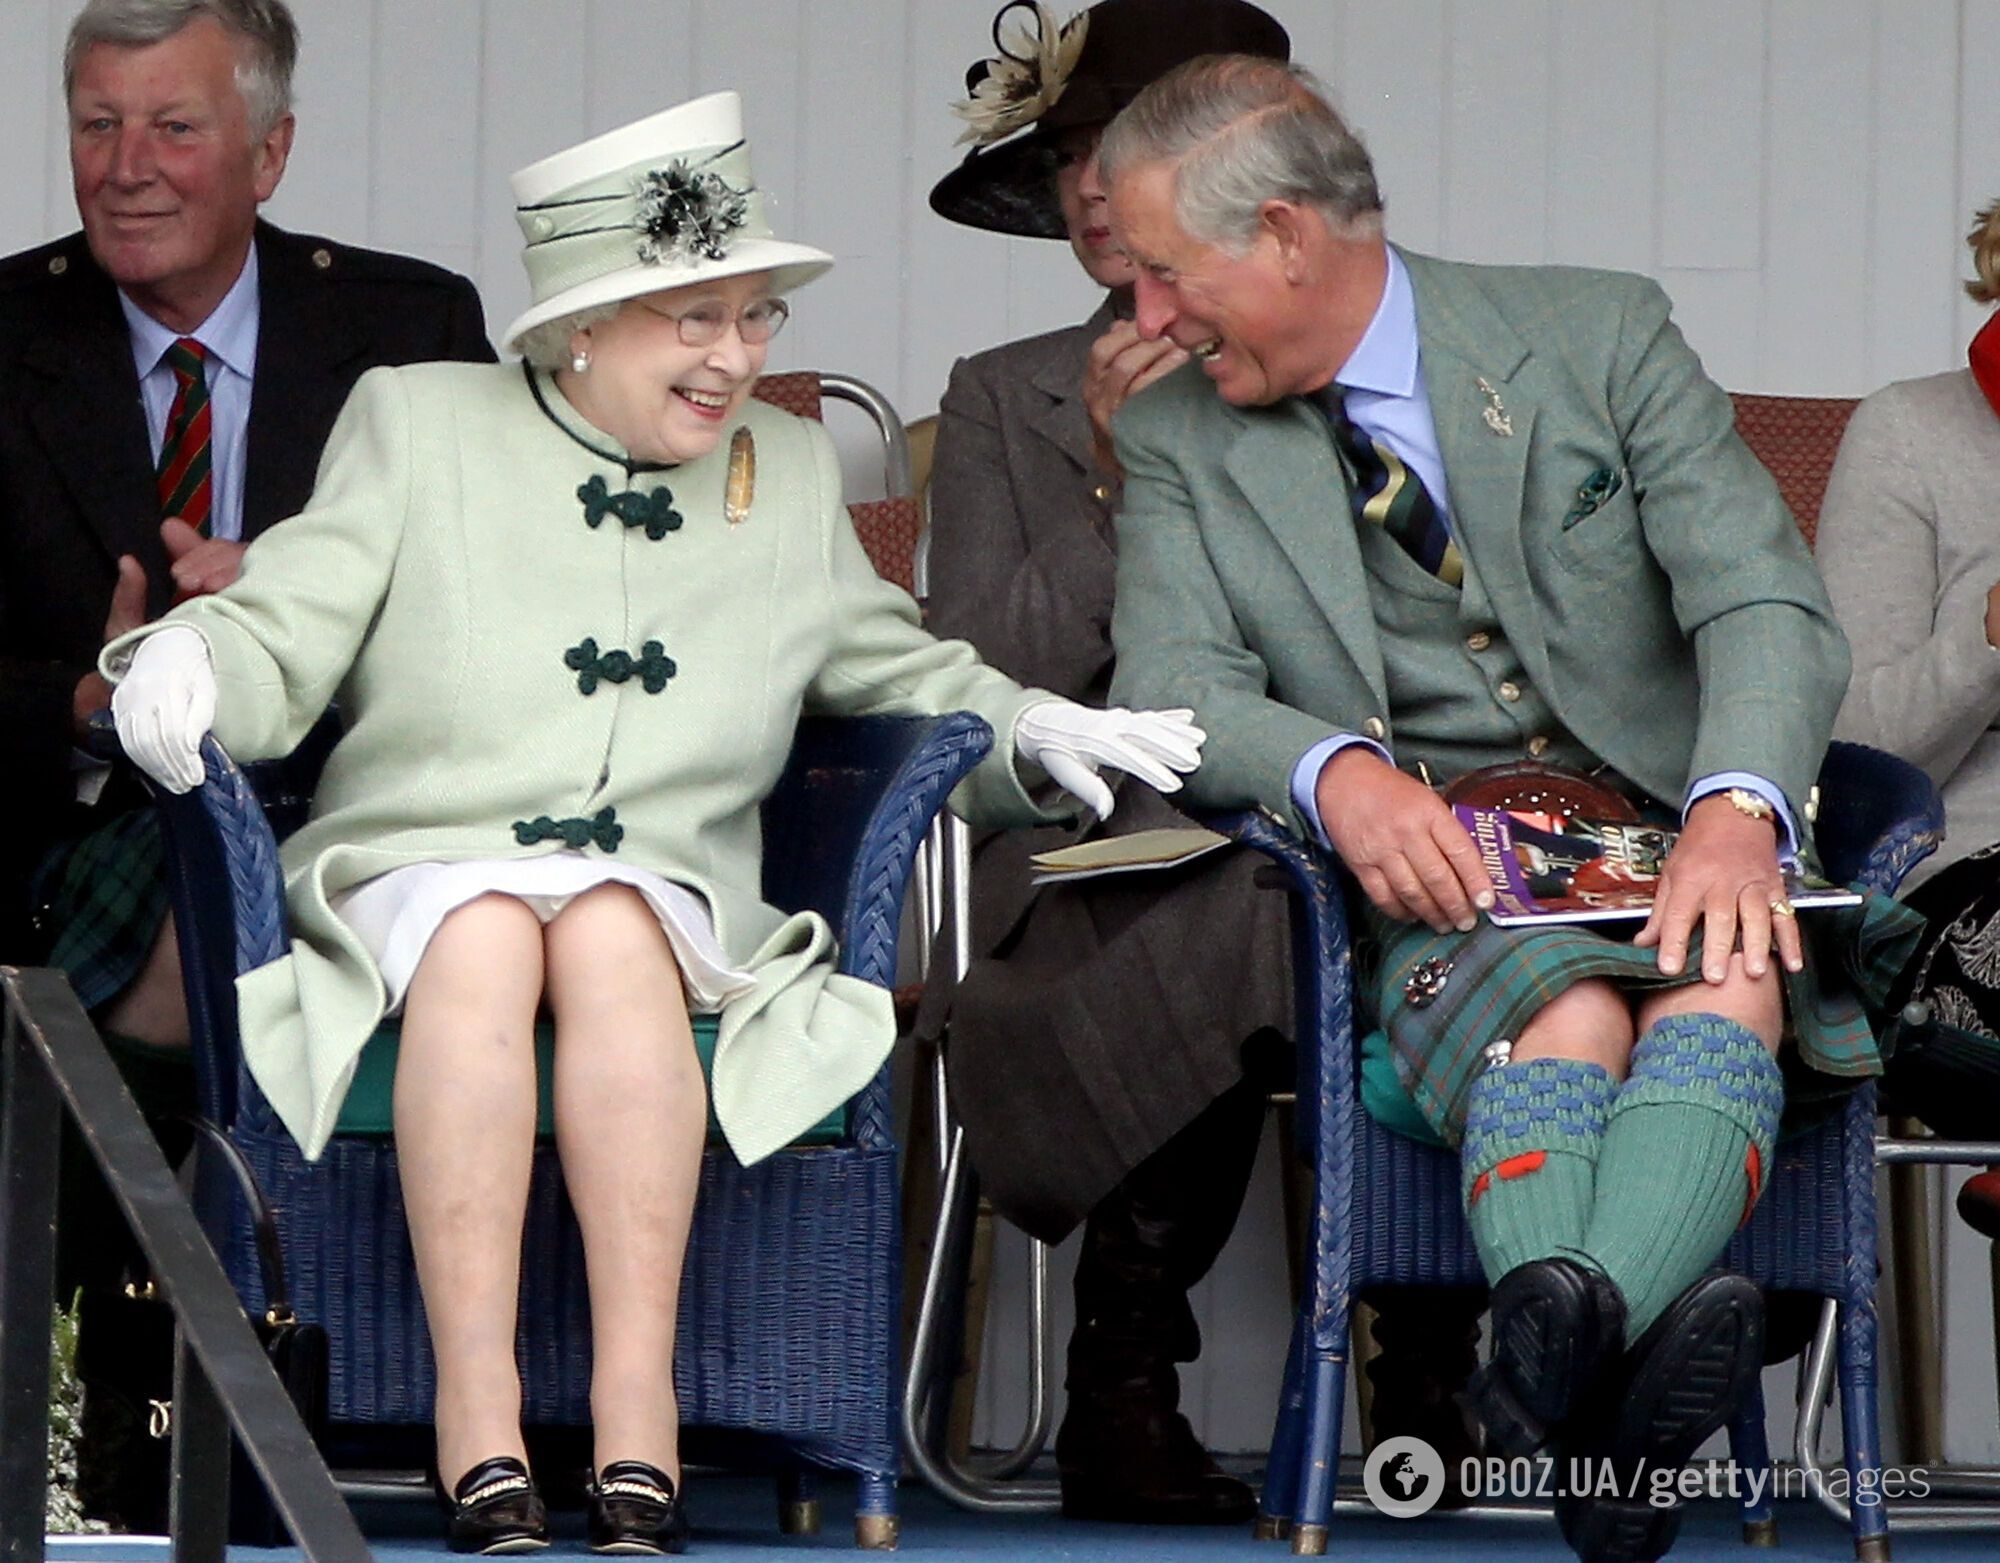 Експерт помітив, що королева часто сміється та торкається принца Чарльза